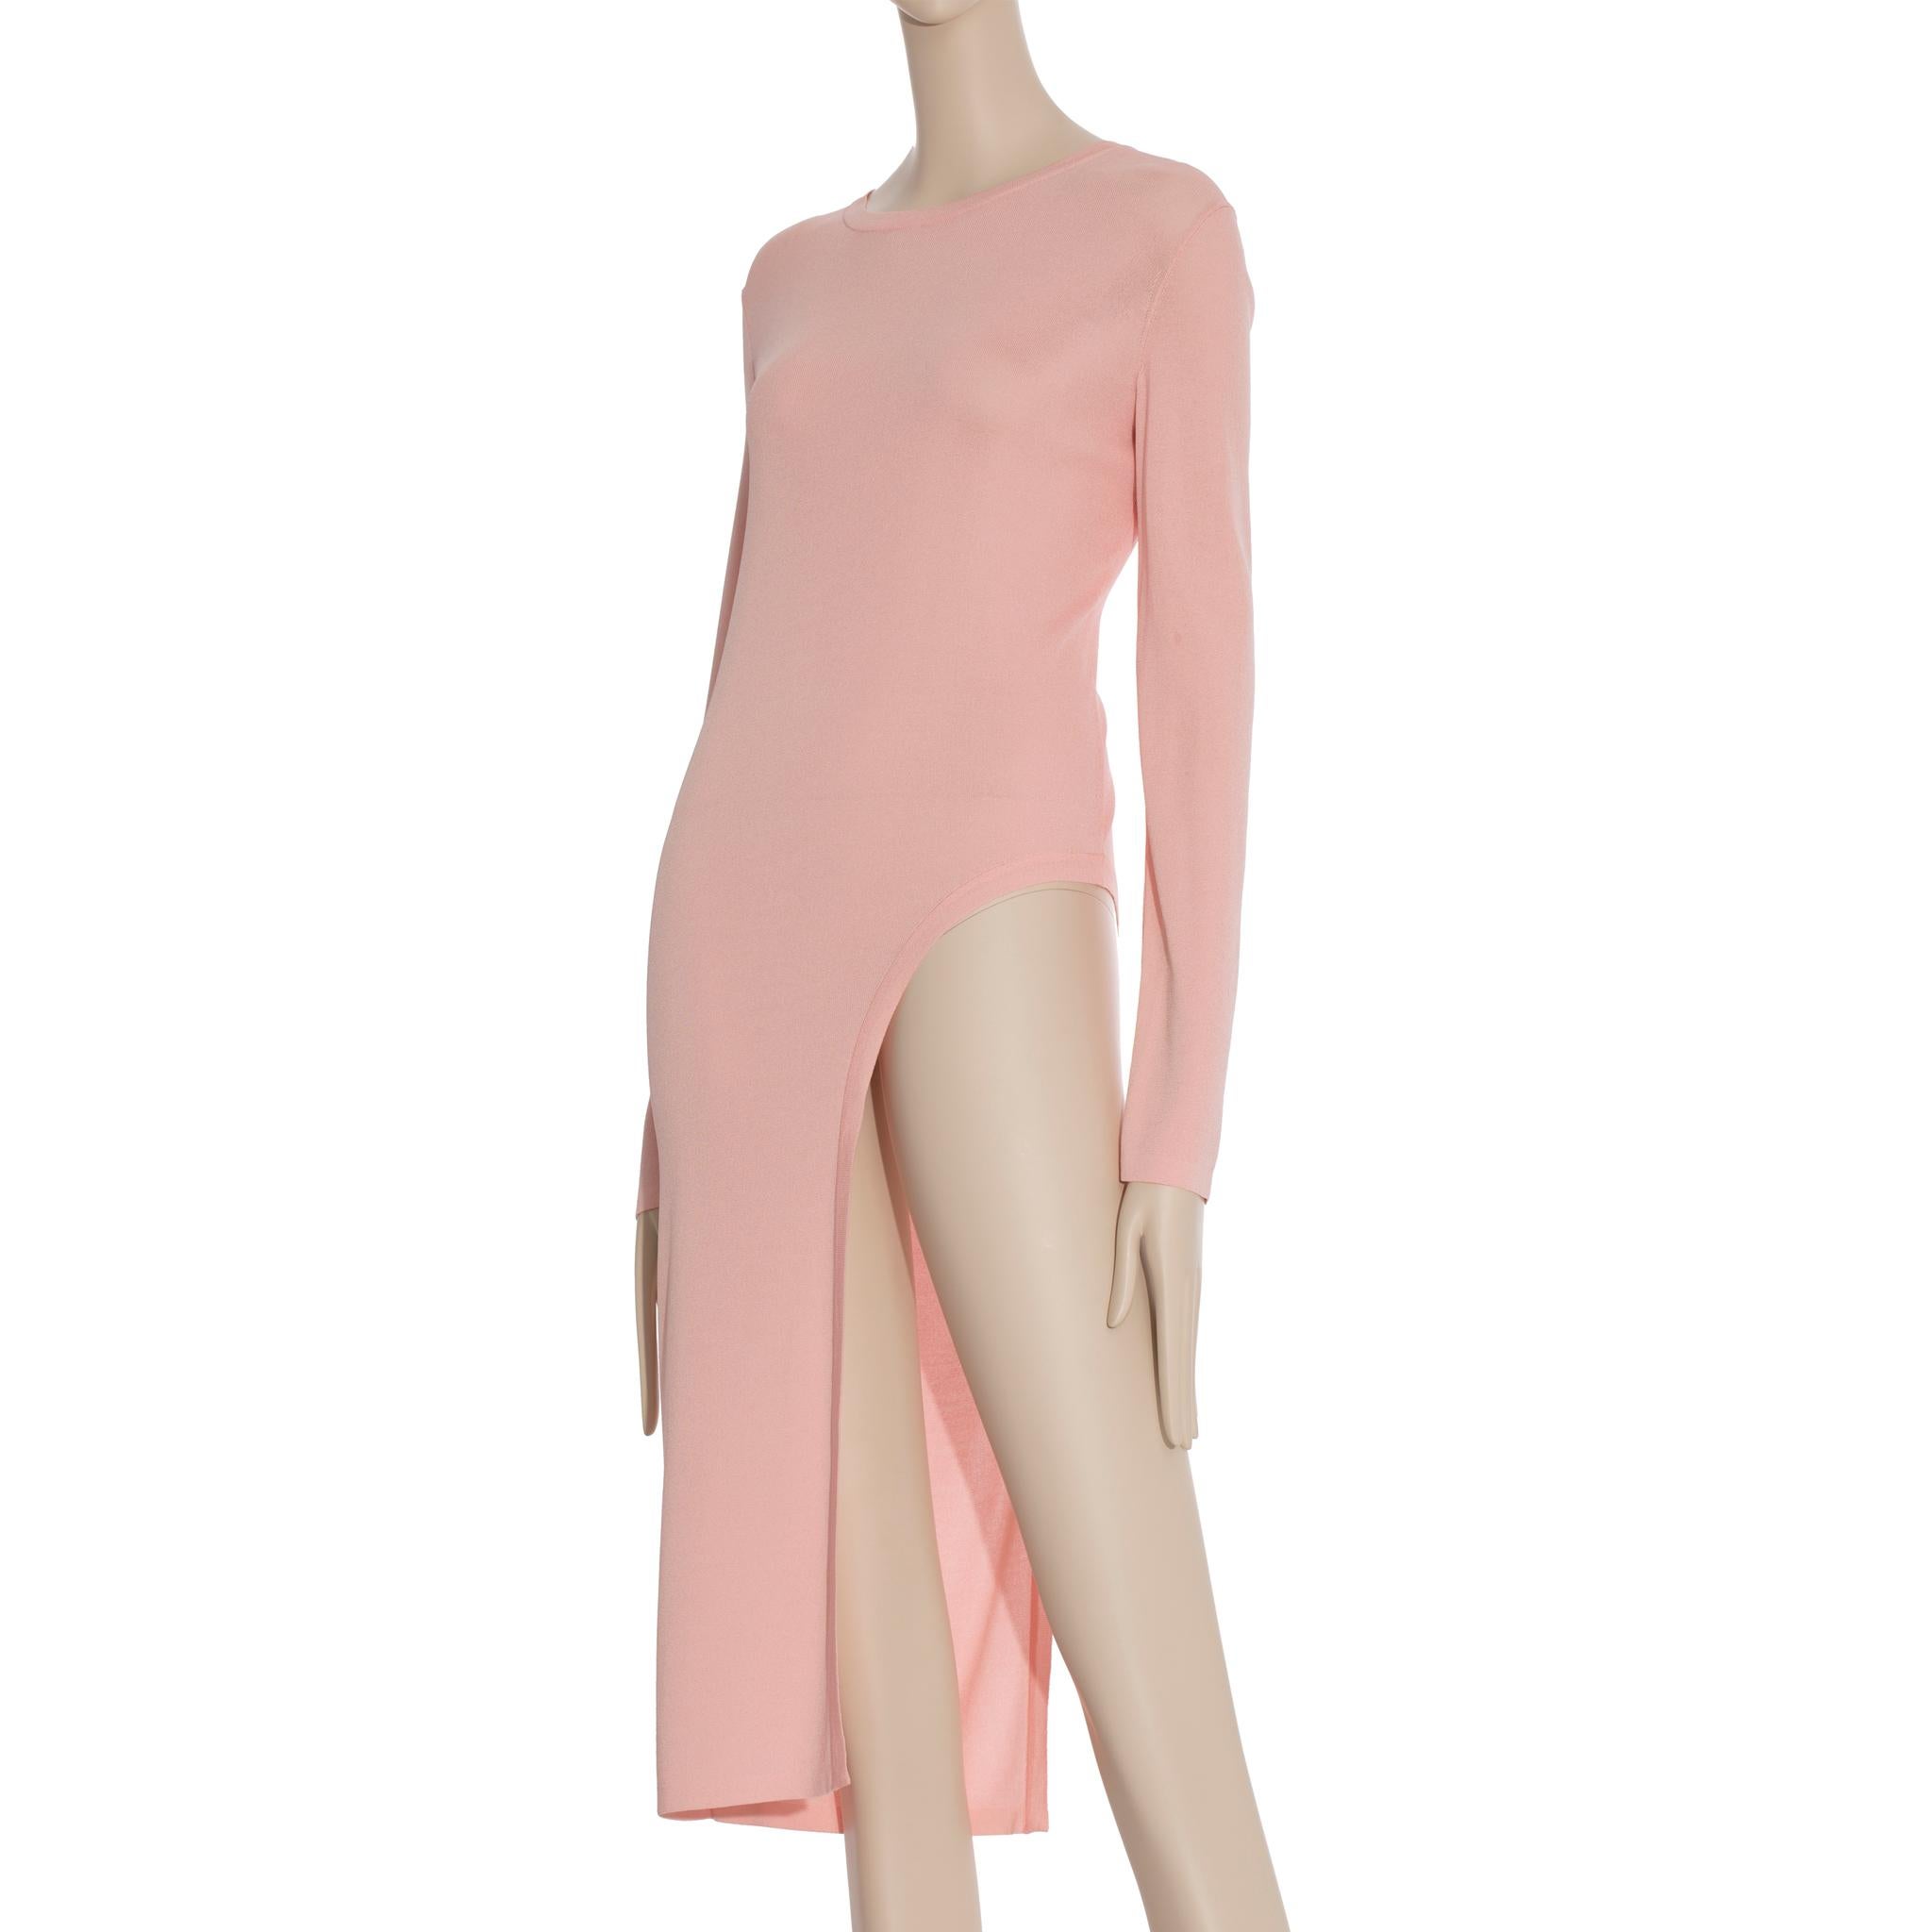 Dieses modische Chanel Knit Pink Long Sleeve Dress/Top ist perfekt für die Sommersaison. Ihr leichtes und atmungsaktives Material ist ideal für Strandtage, während ihr klassisches Design und ihre bequeme Passform sie für fast jede Gelegenheit